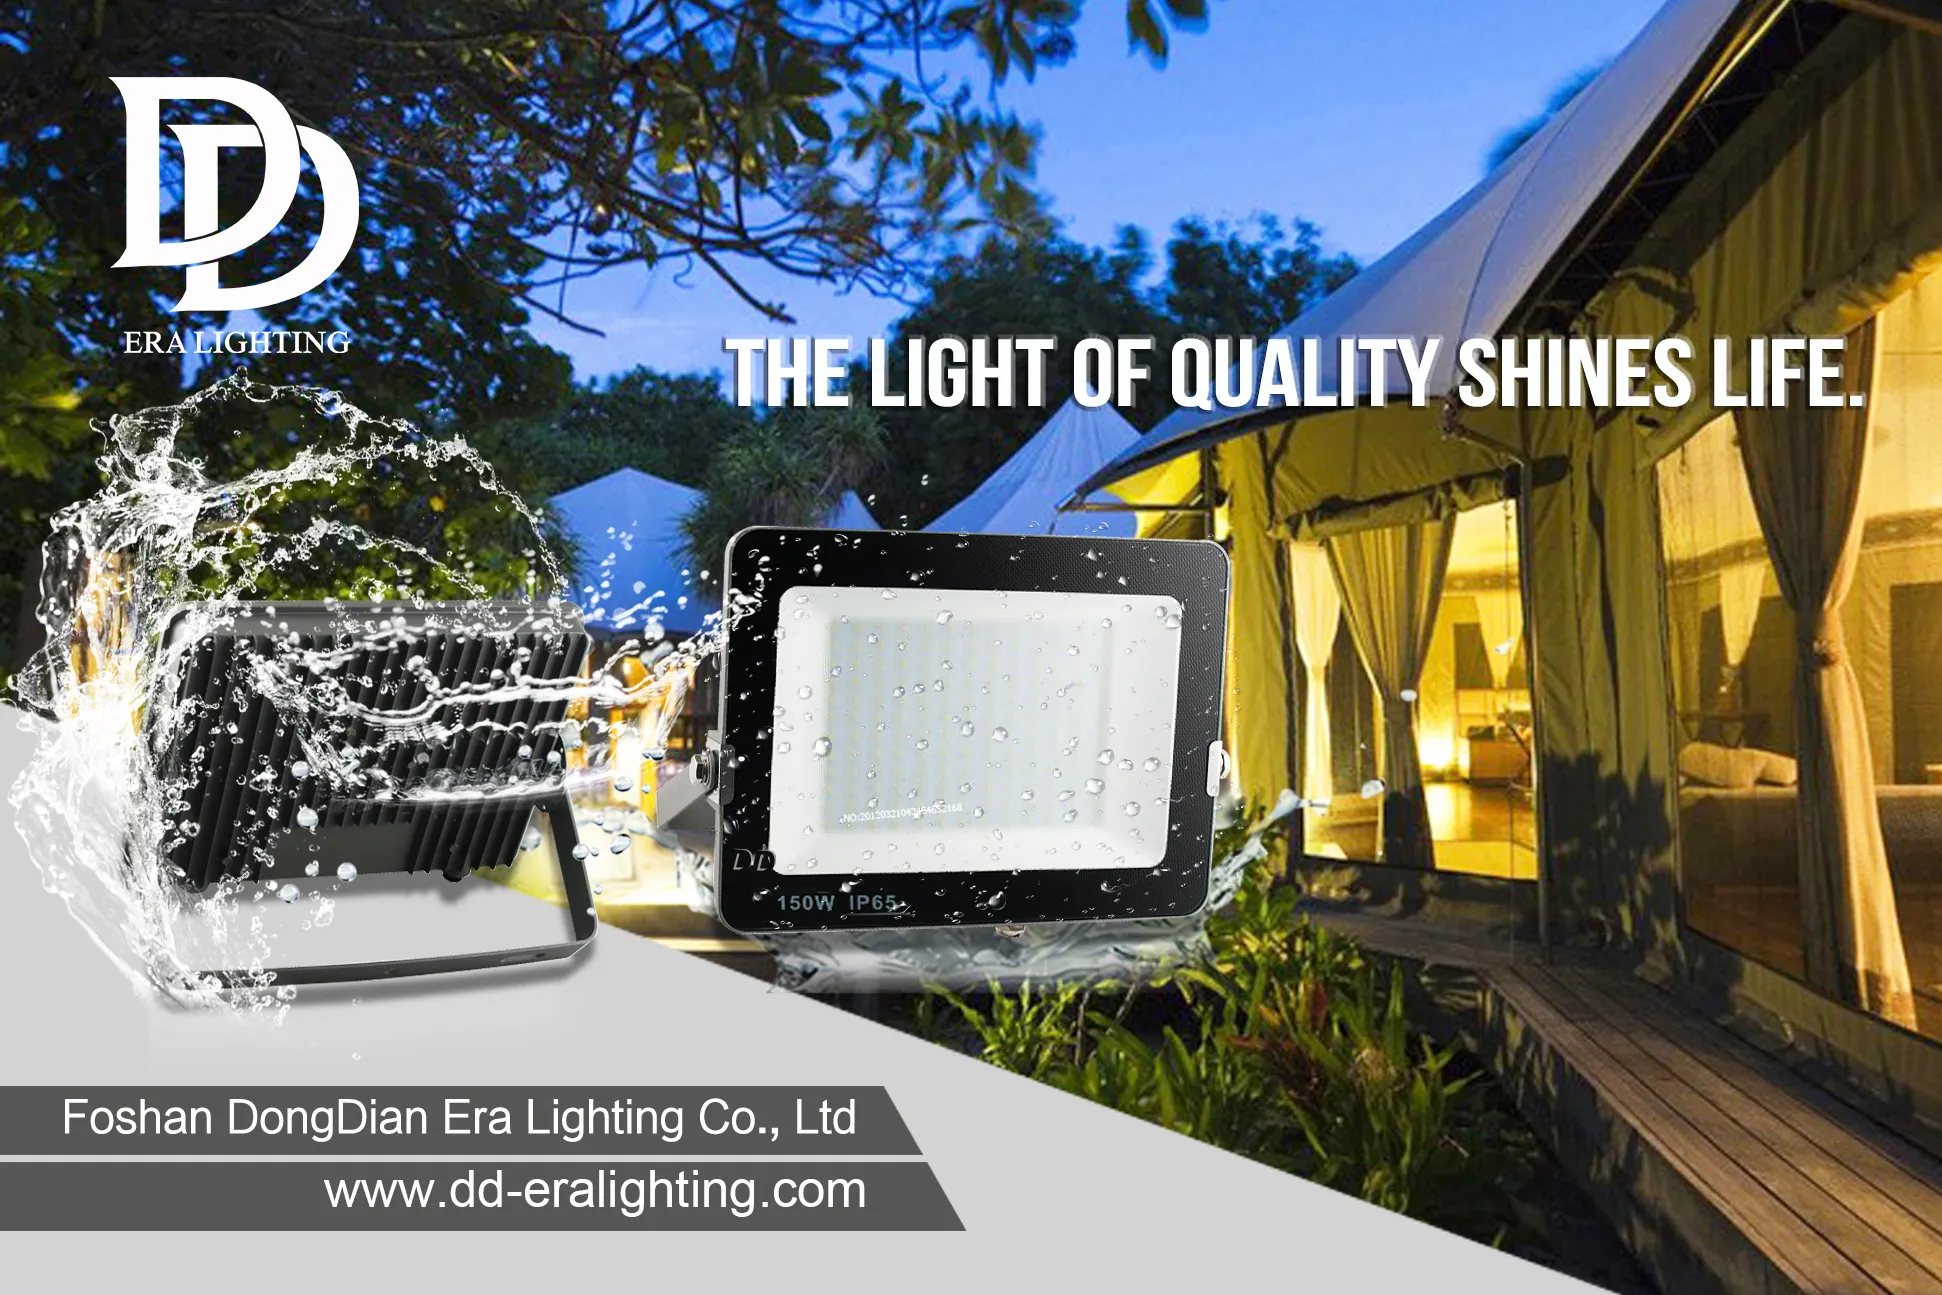 Proyectores | Ring amplía su iluminación inteligente con bombillas solares e interiores